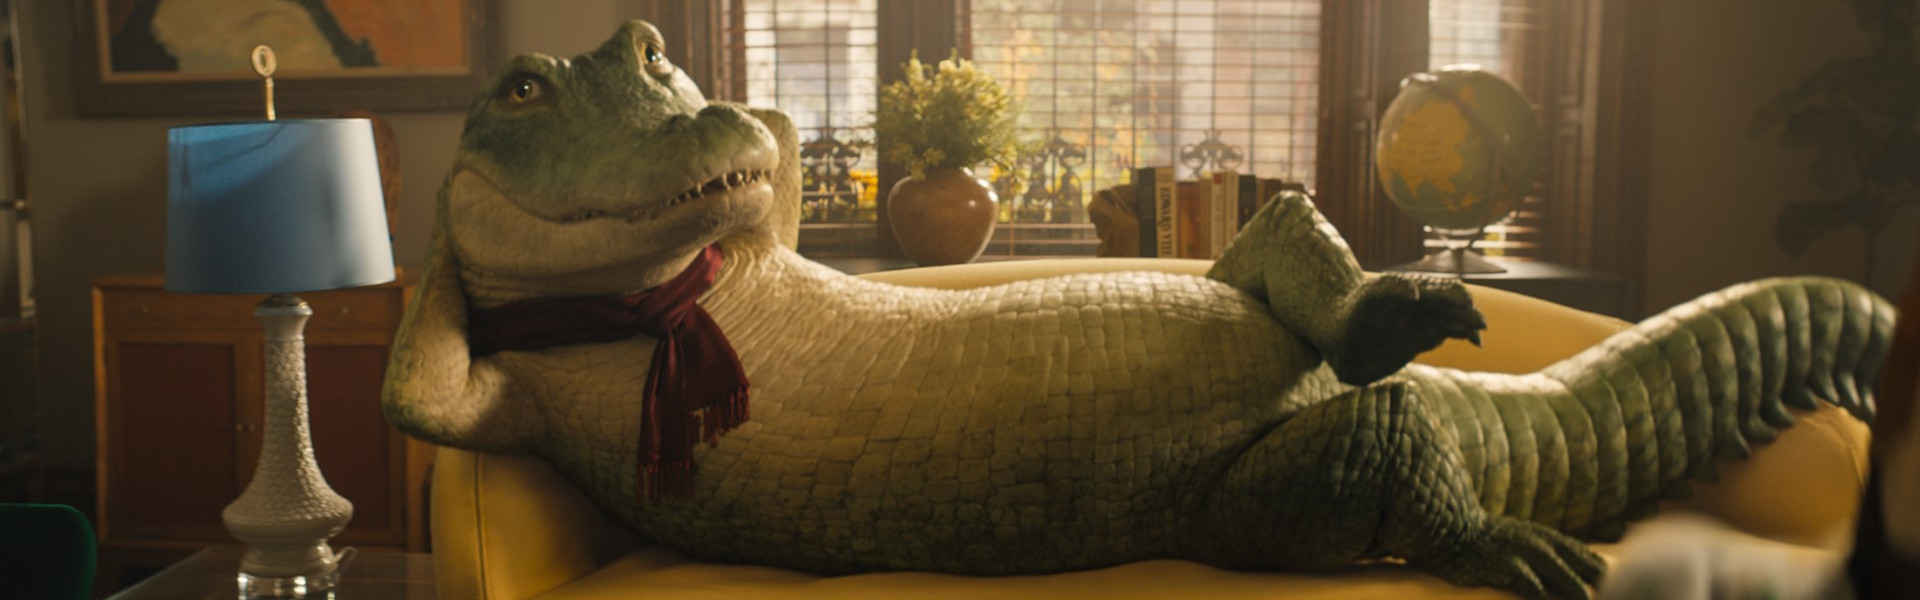 Wielki zielony krokodyl domowy <span> (dubbing) </span>